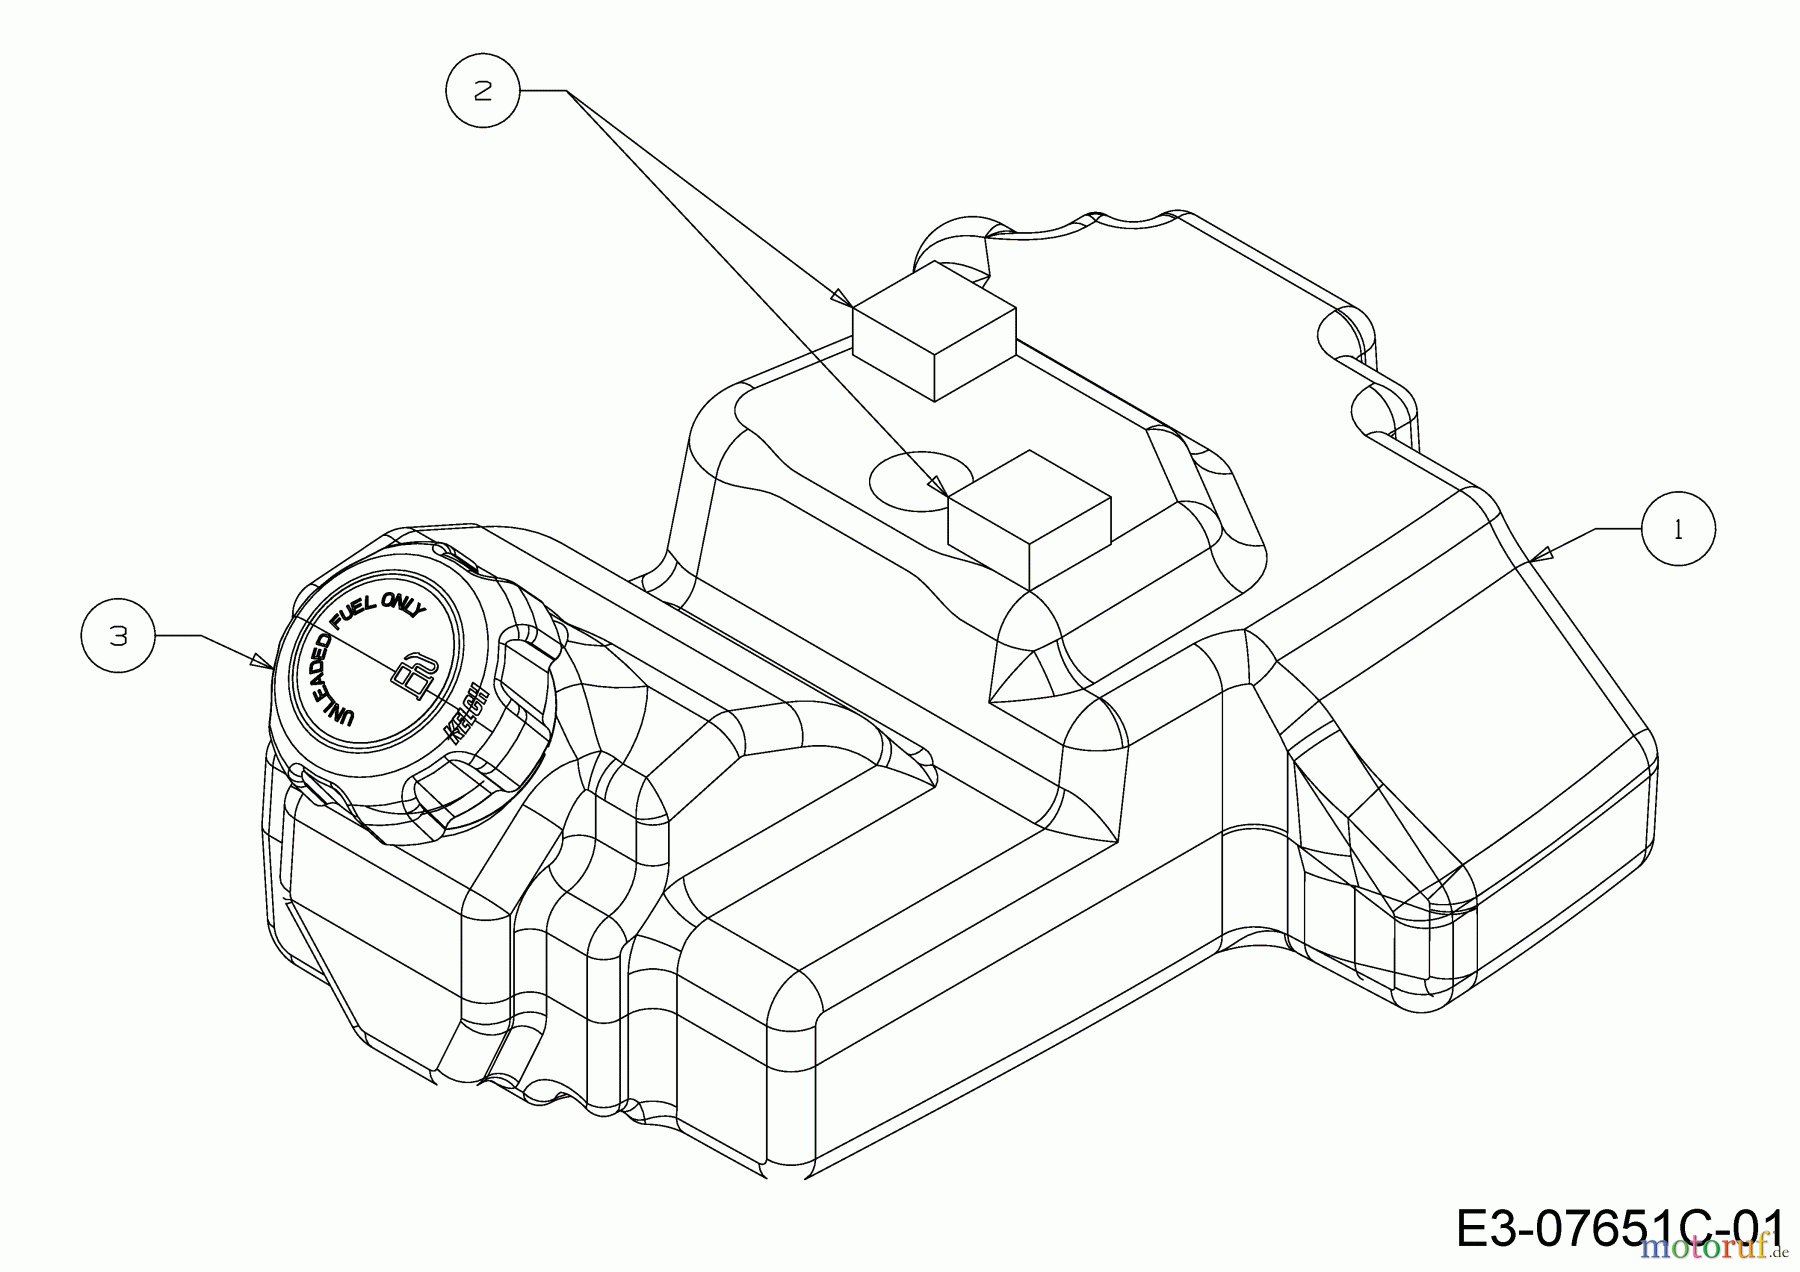  WOLF-Garten Expert Rasentraktoren Scooter Pro Hydro 13A221HD650  (2018) Tank